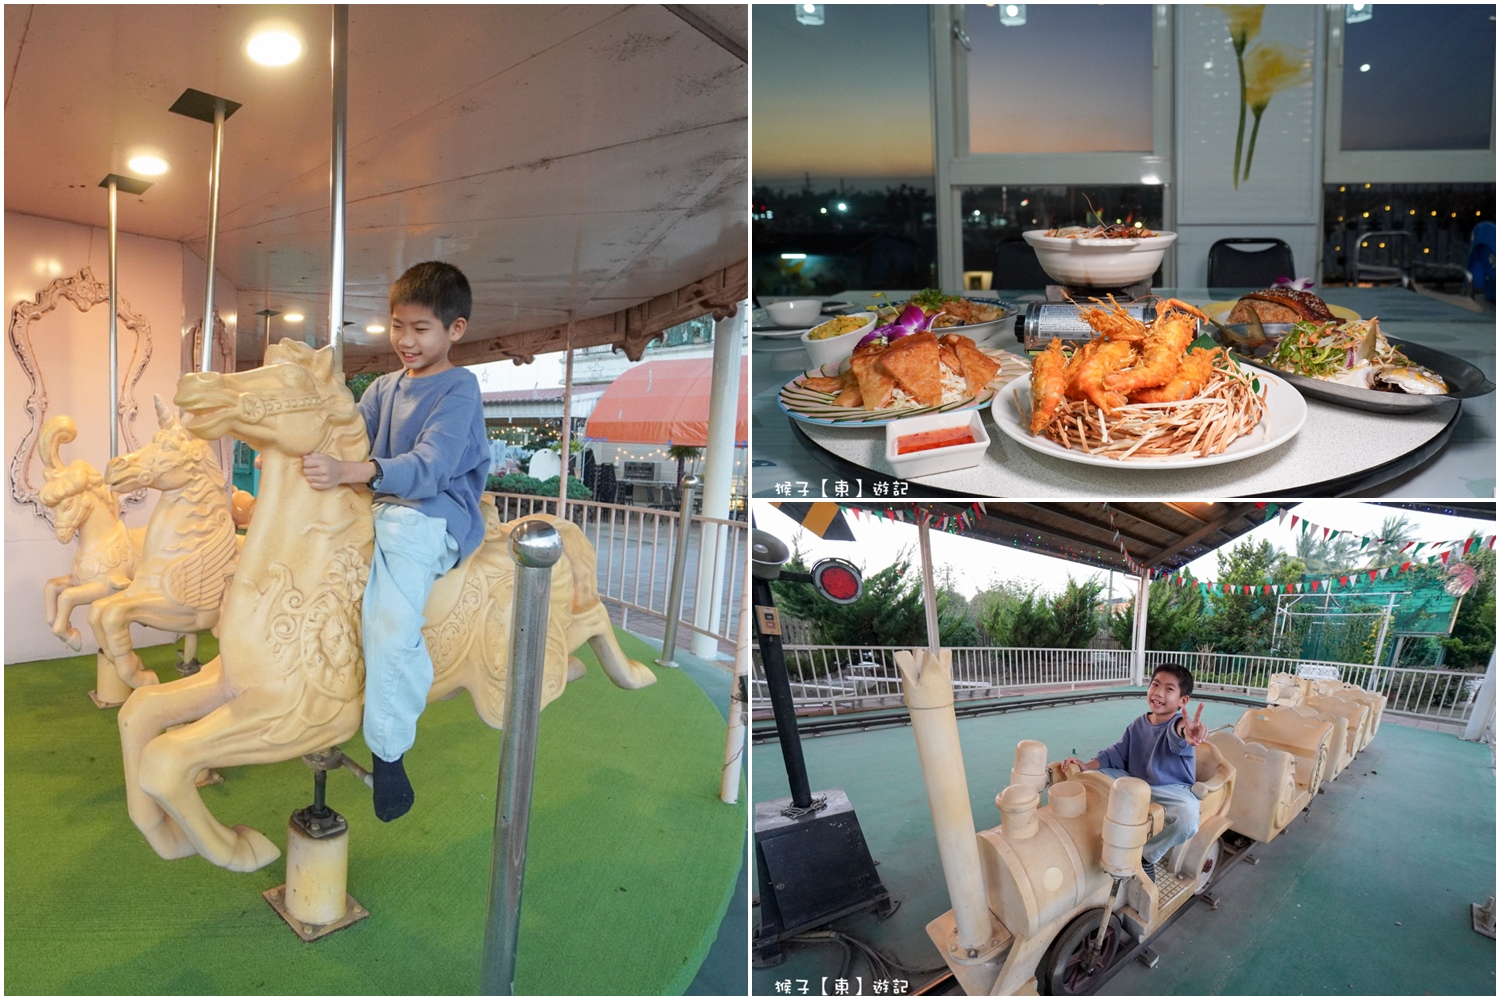 延伸閱讀：[屏東] 黃金蝦無毒泰國蝦餐廳 豐盛新鮮海鮮 親子旋轉木馬 小火車免費玩